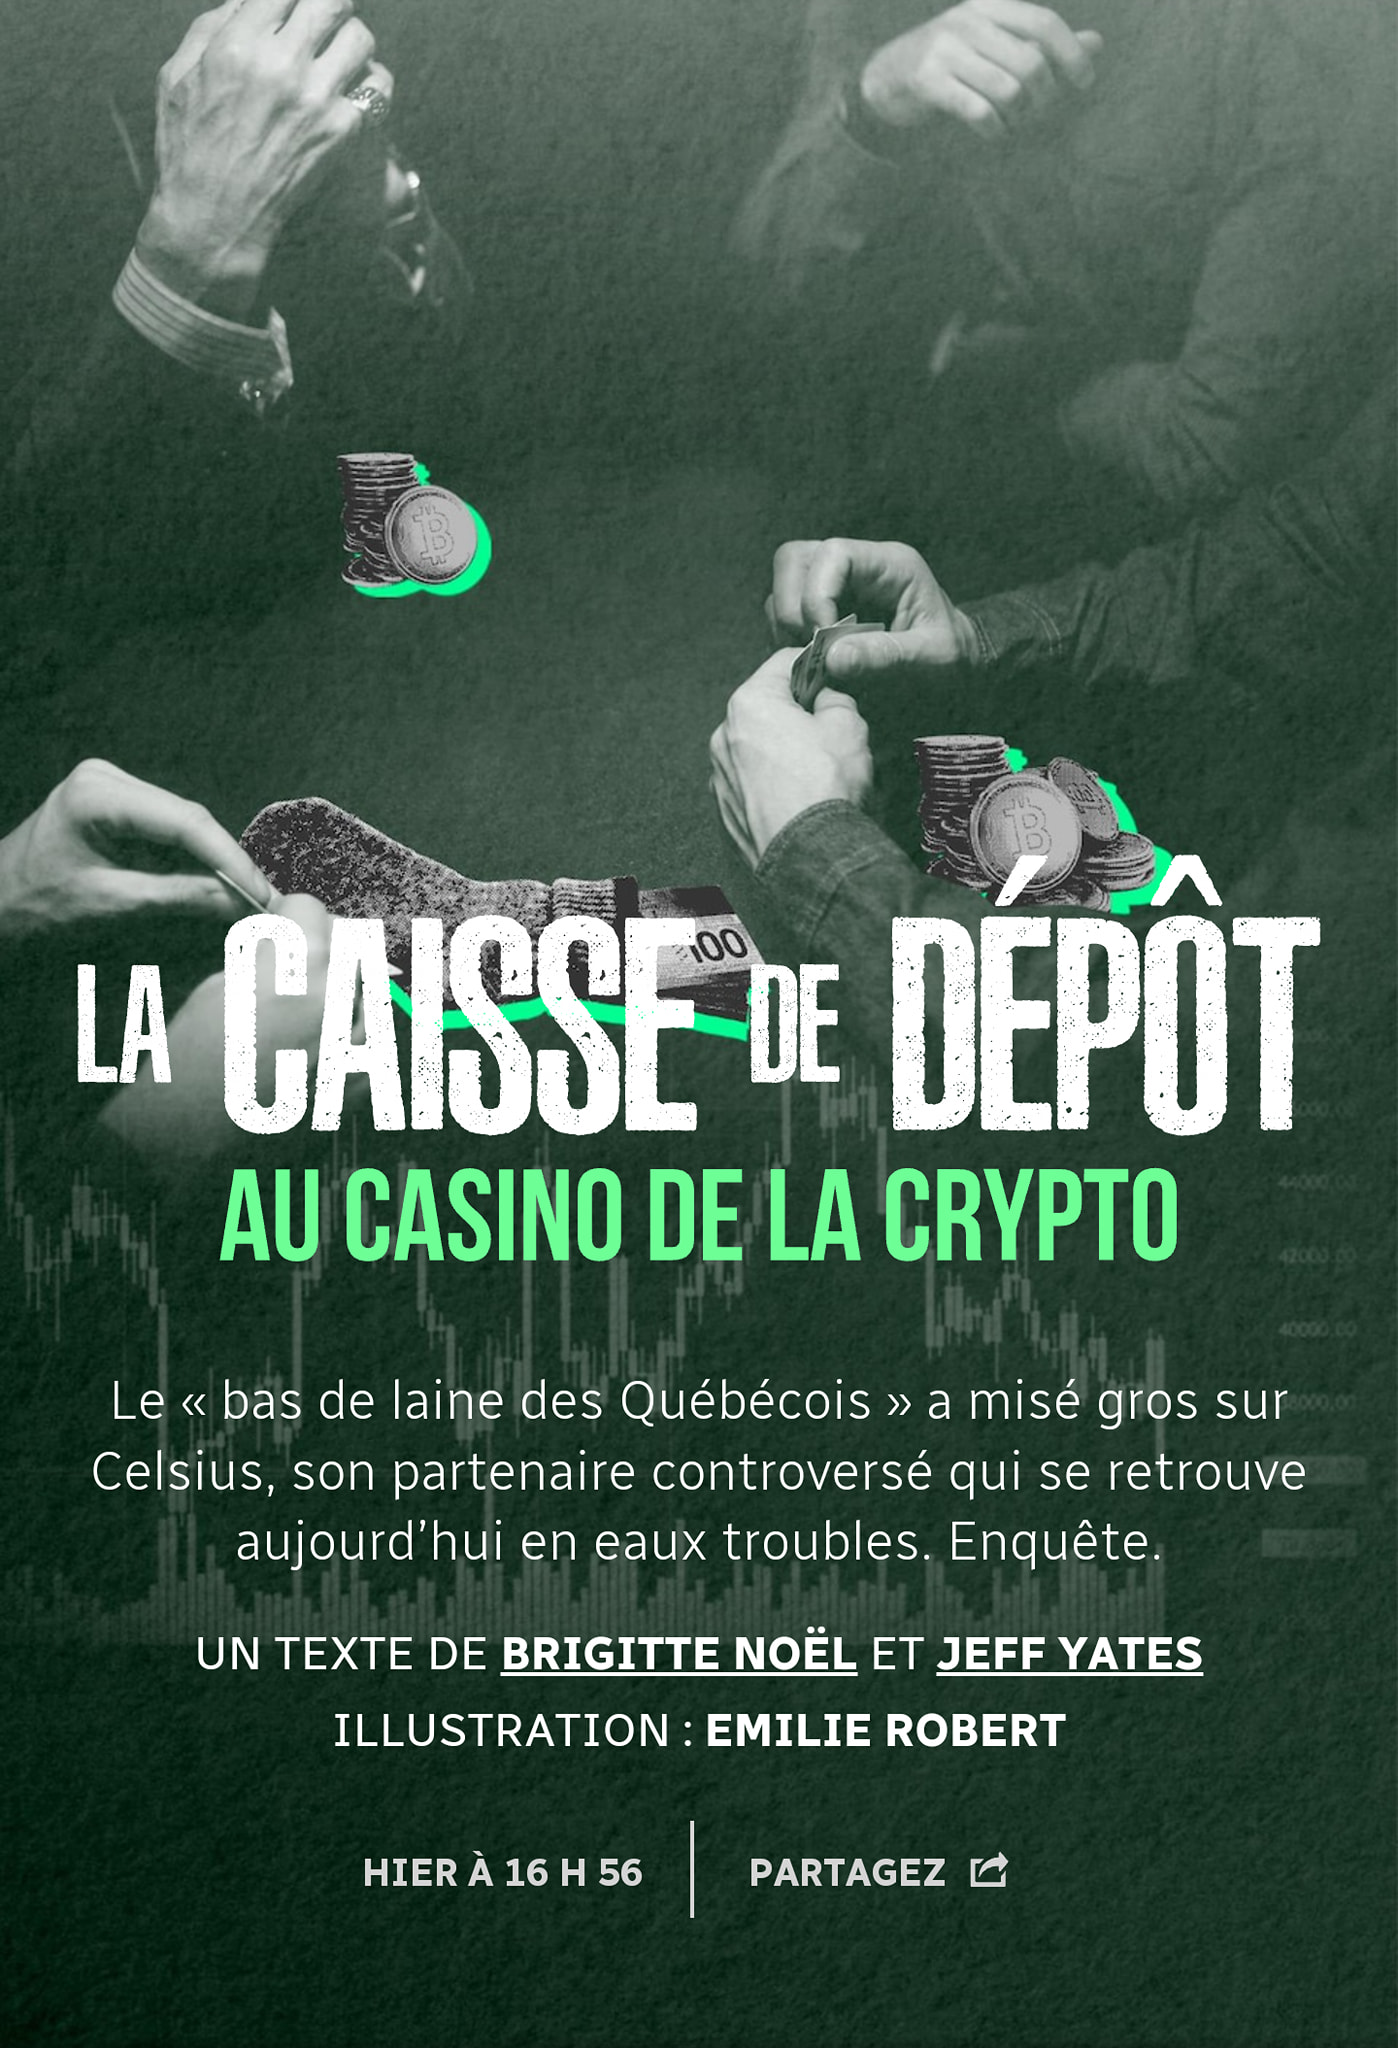 caisse-de-depot-au-casino-des-cryptos.jpg